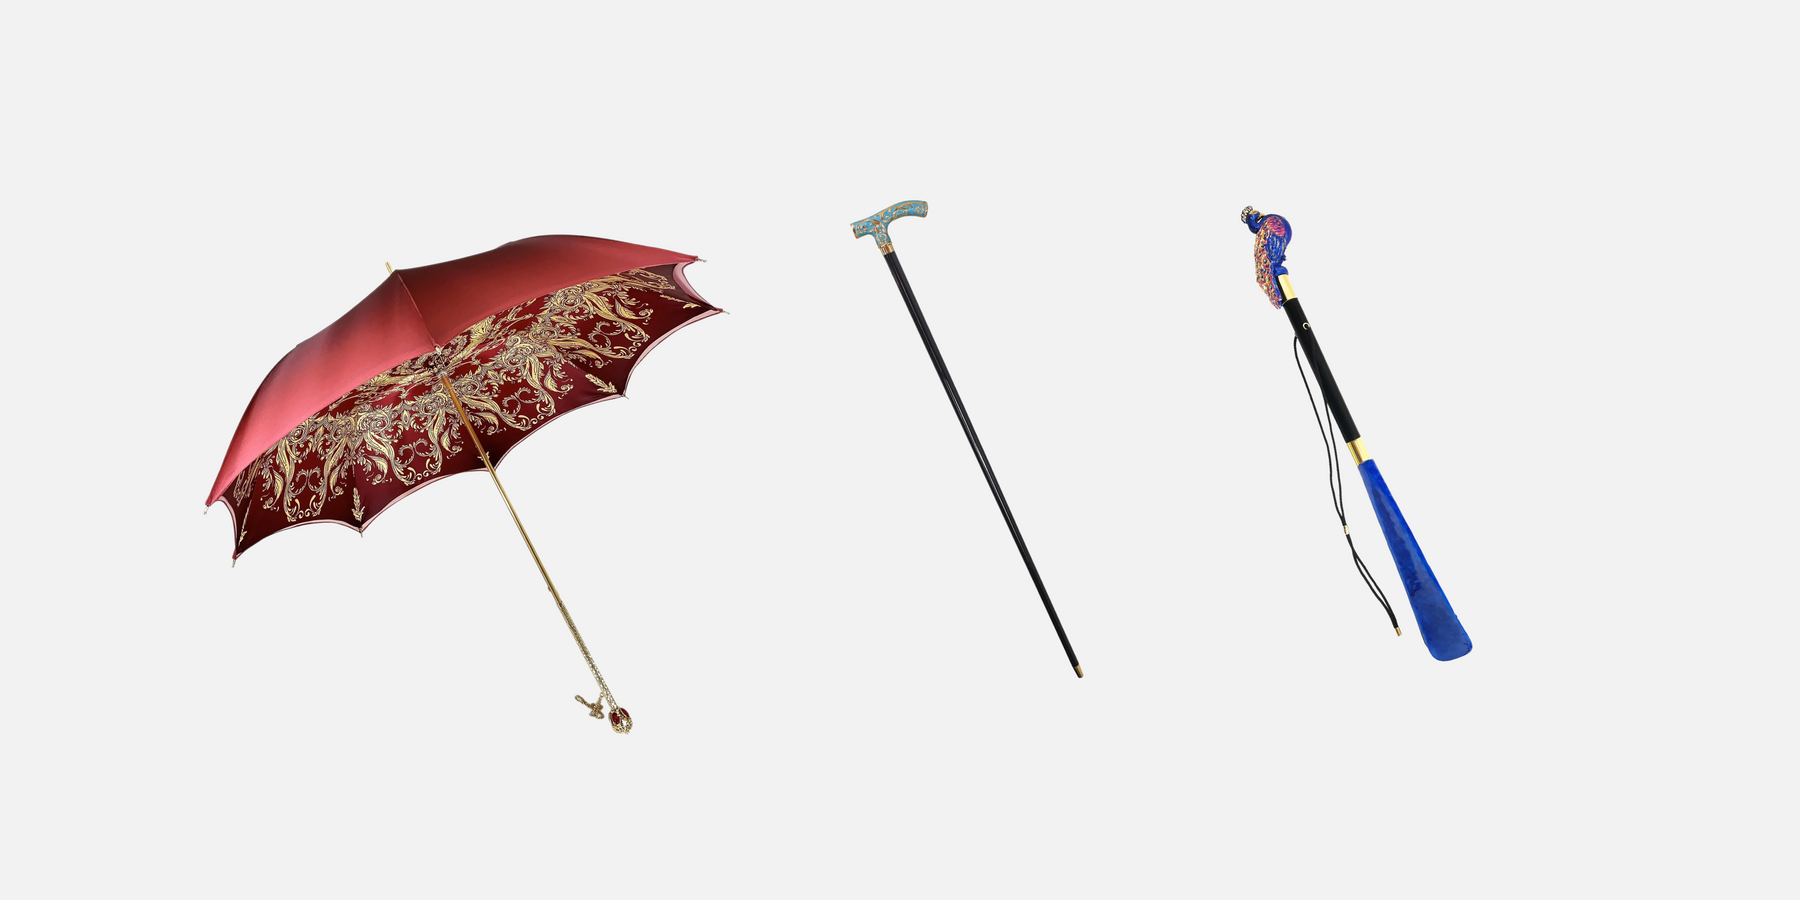 Manufacturer of exquisite unique umbrellas and walking canes